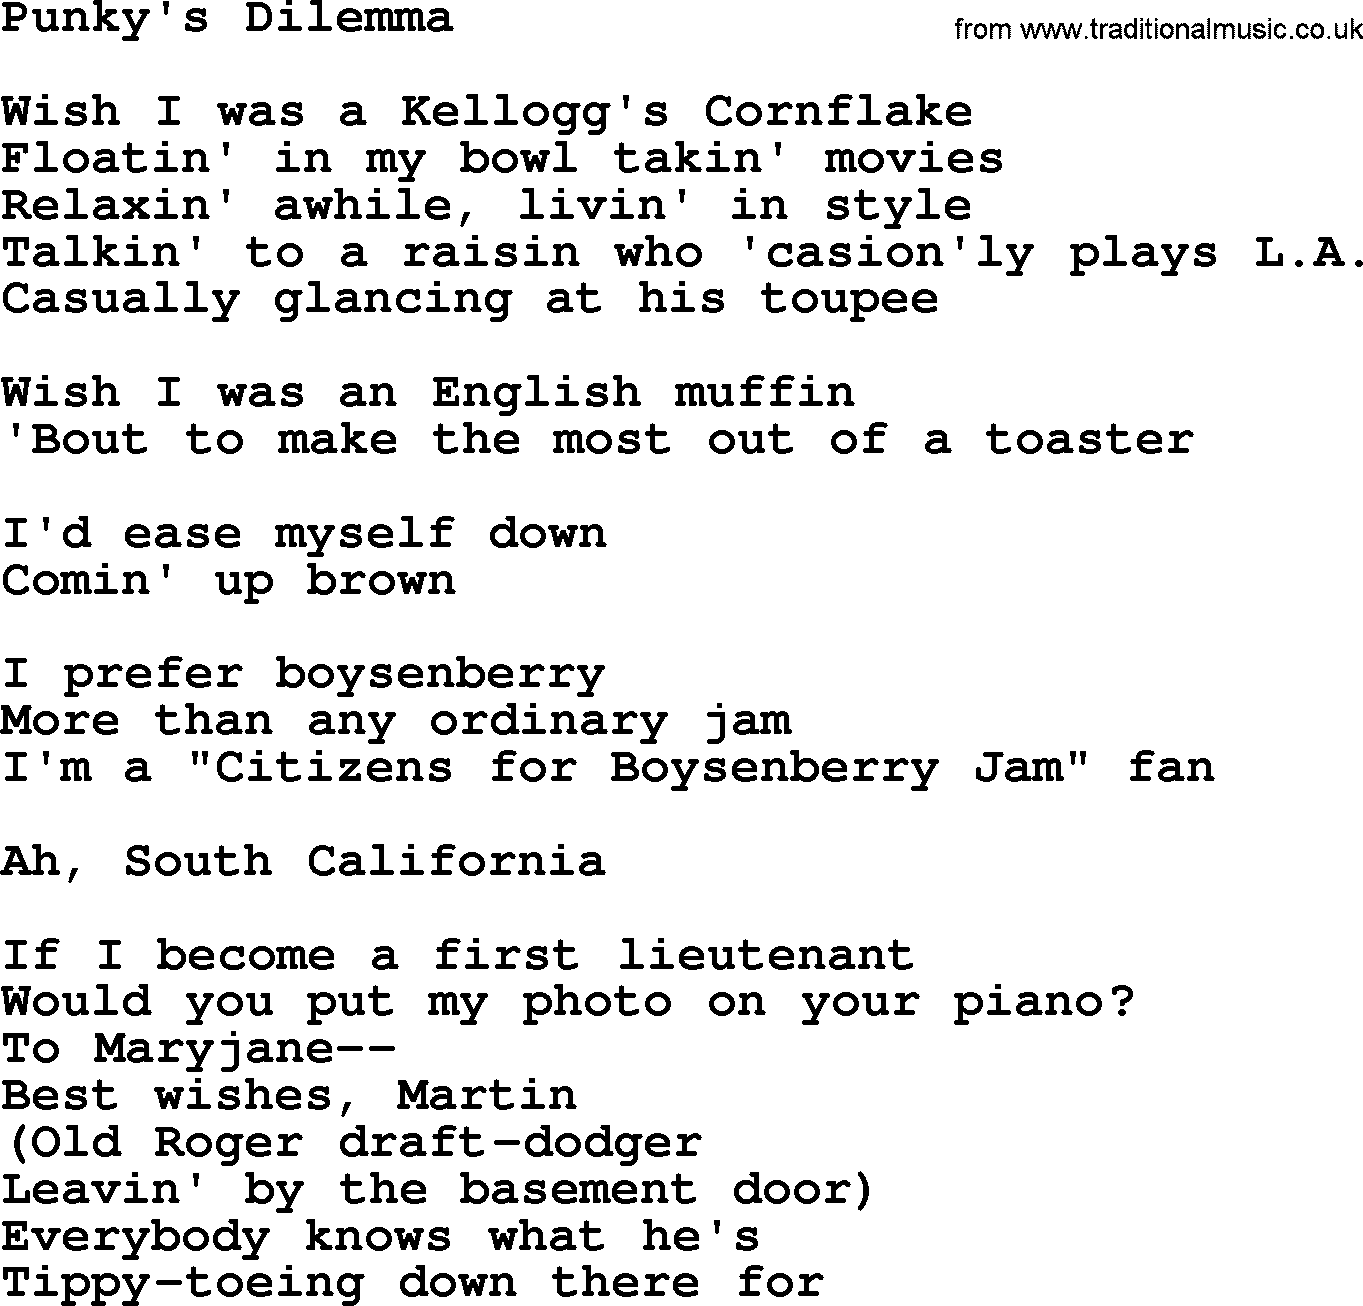 The Byrds song Punky's Dilemma, lyrics